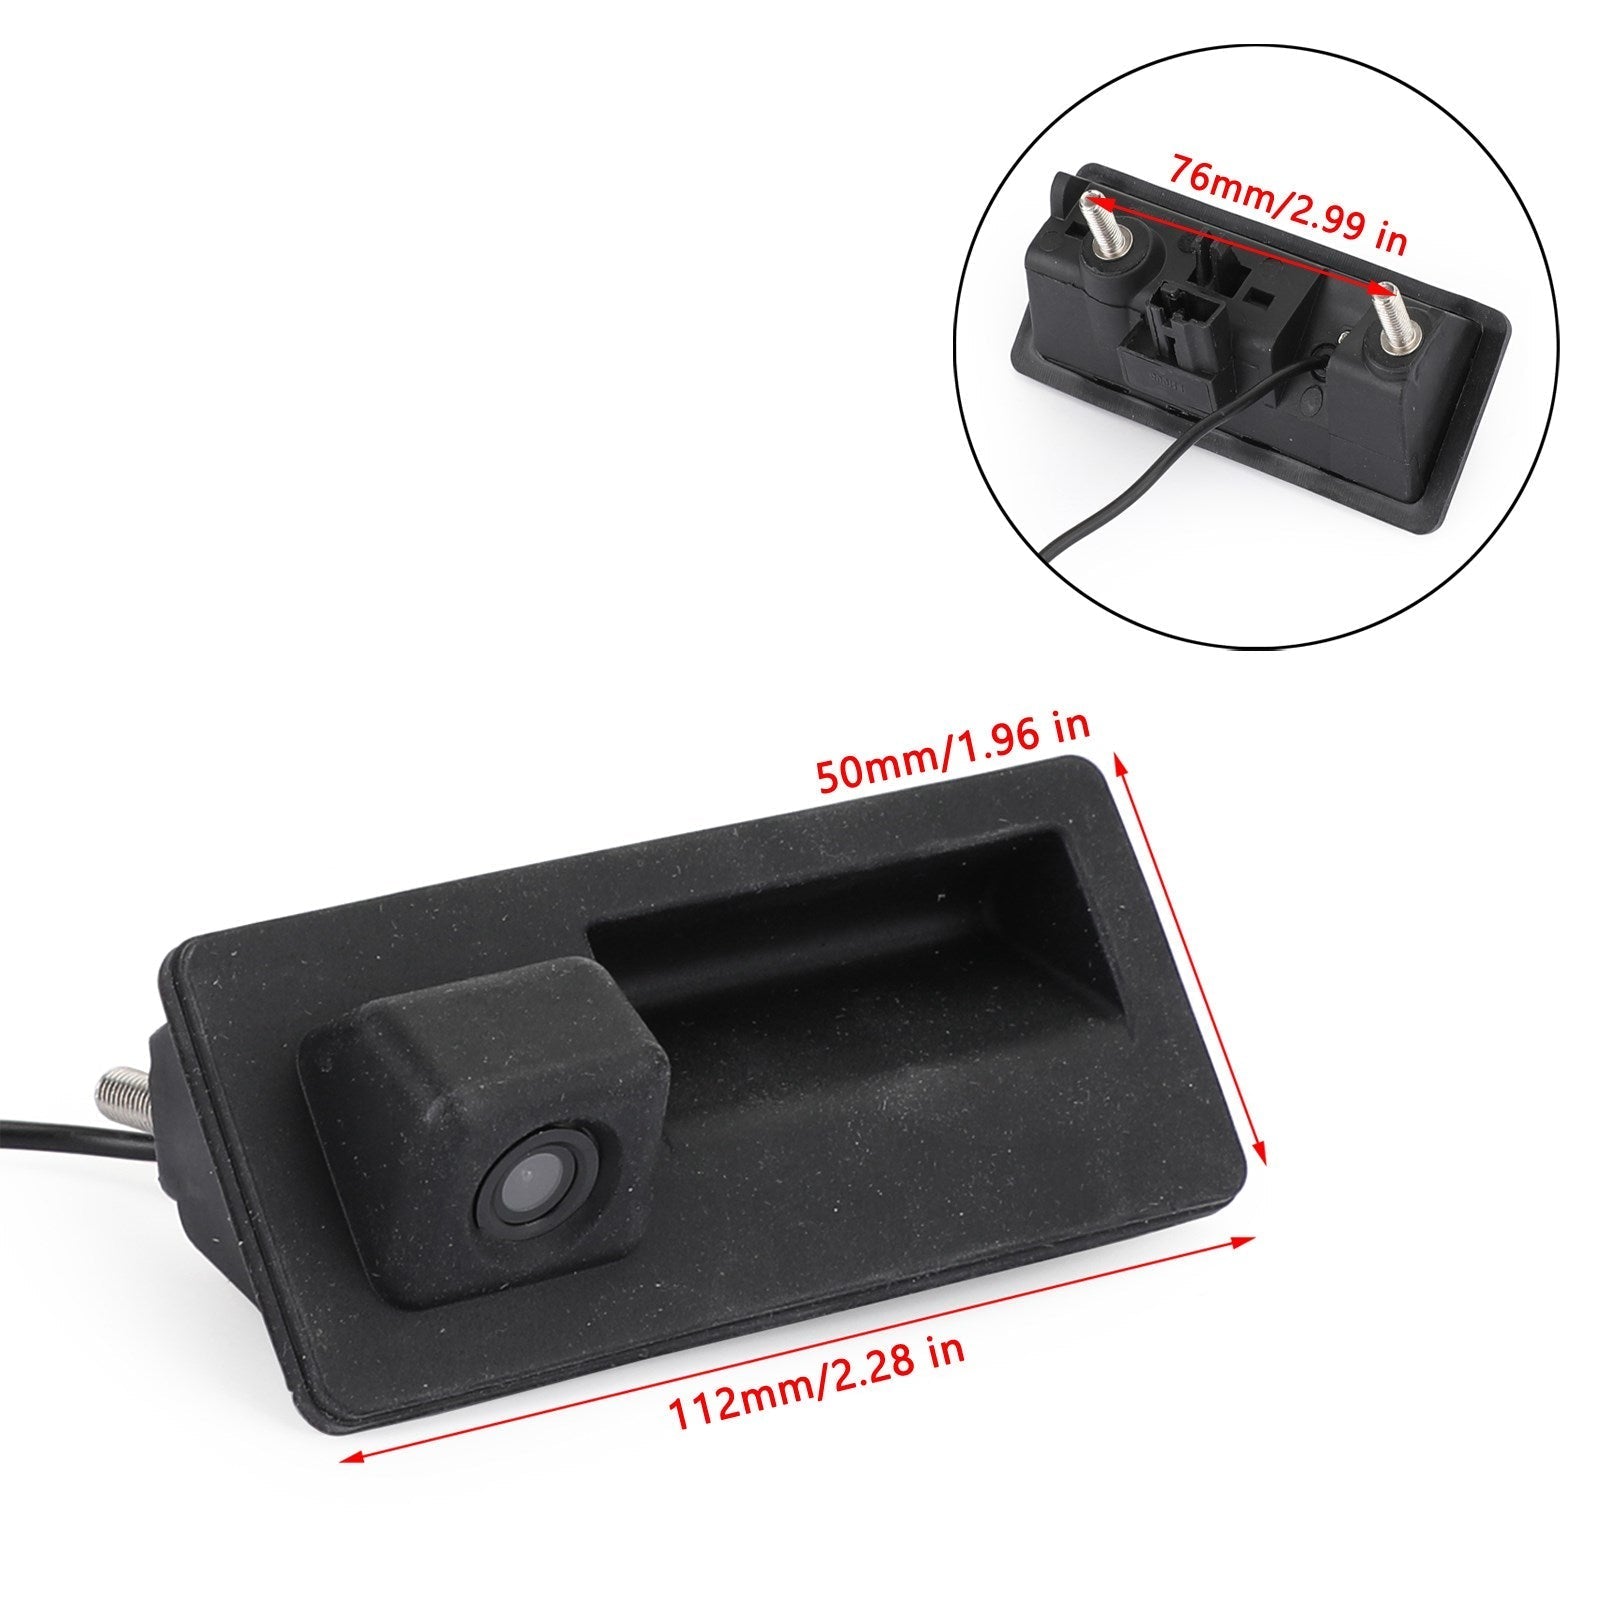 Poignée de coffre de voiture CCD caméra de recul vue arrière adaptée pour A4L A6L A3 S5 S3 Q3 Q5 Q7